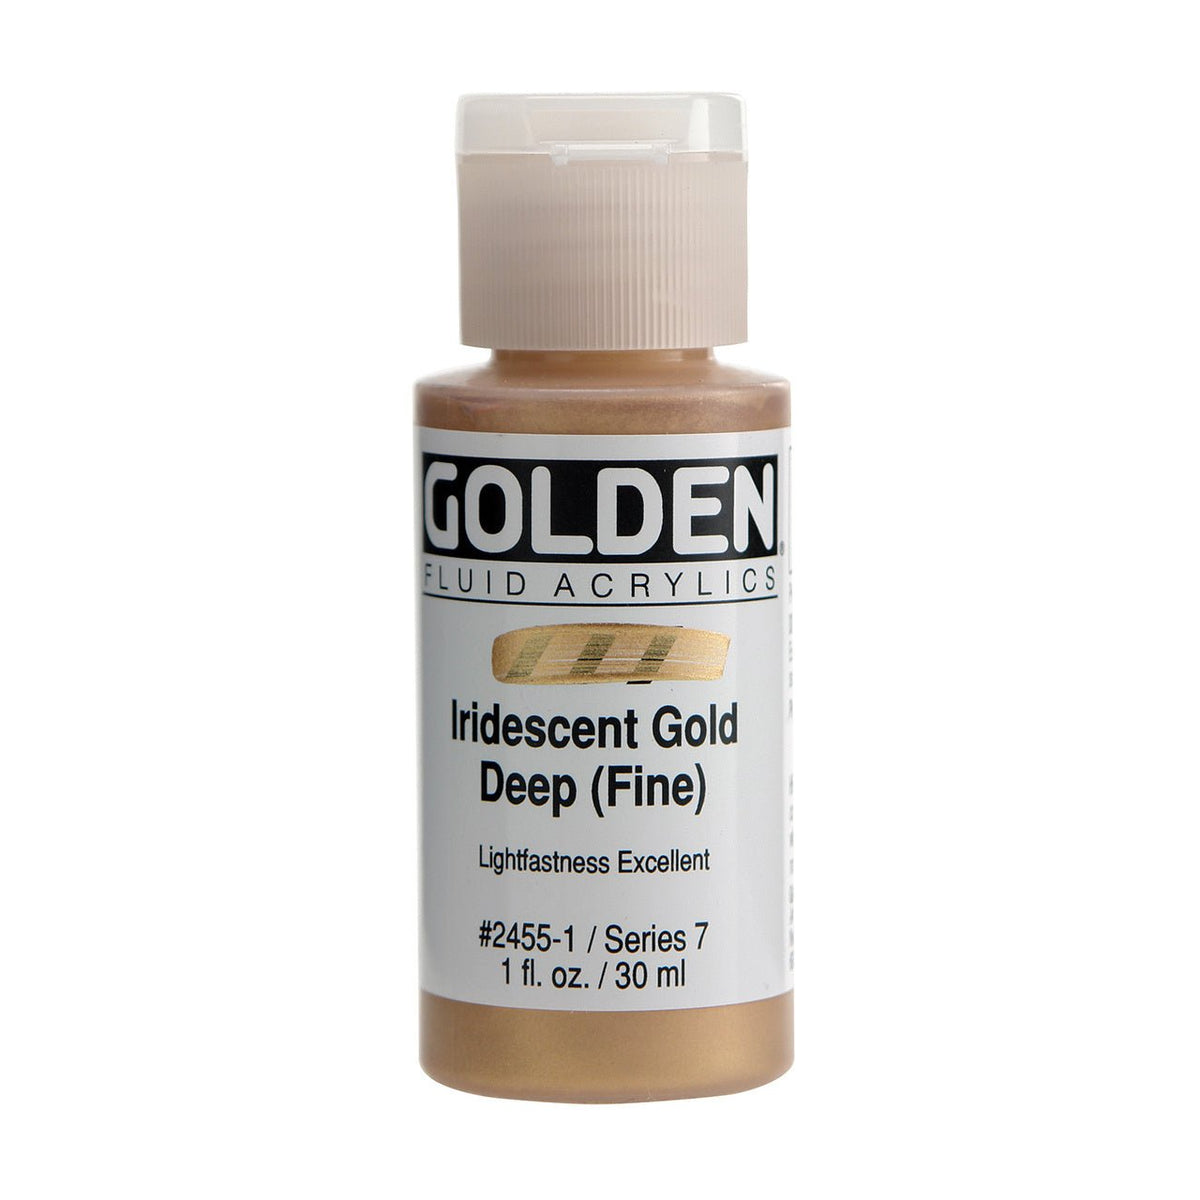 Golden Fluid Acrylic Iridescent Gold Deep (fine) 1 oz - merriartist.com